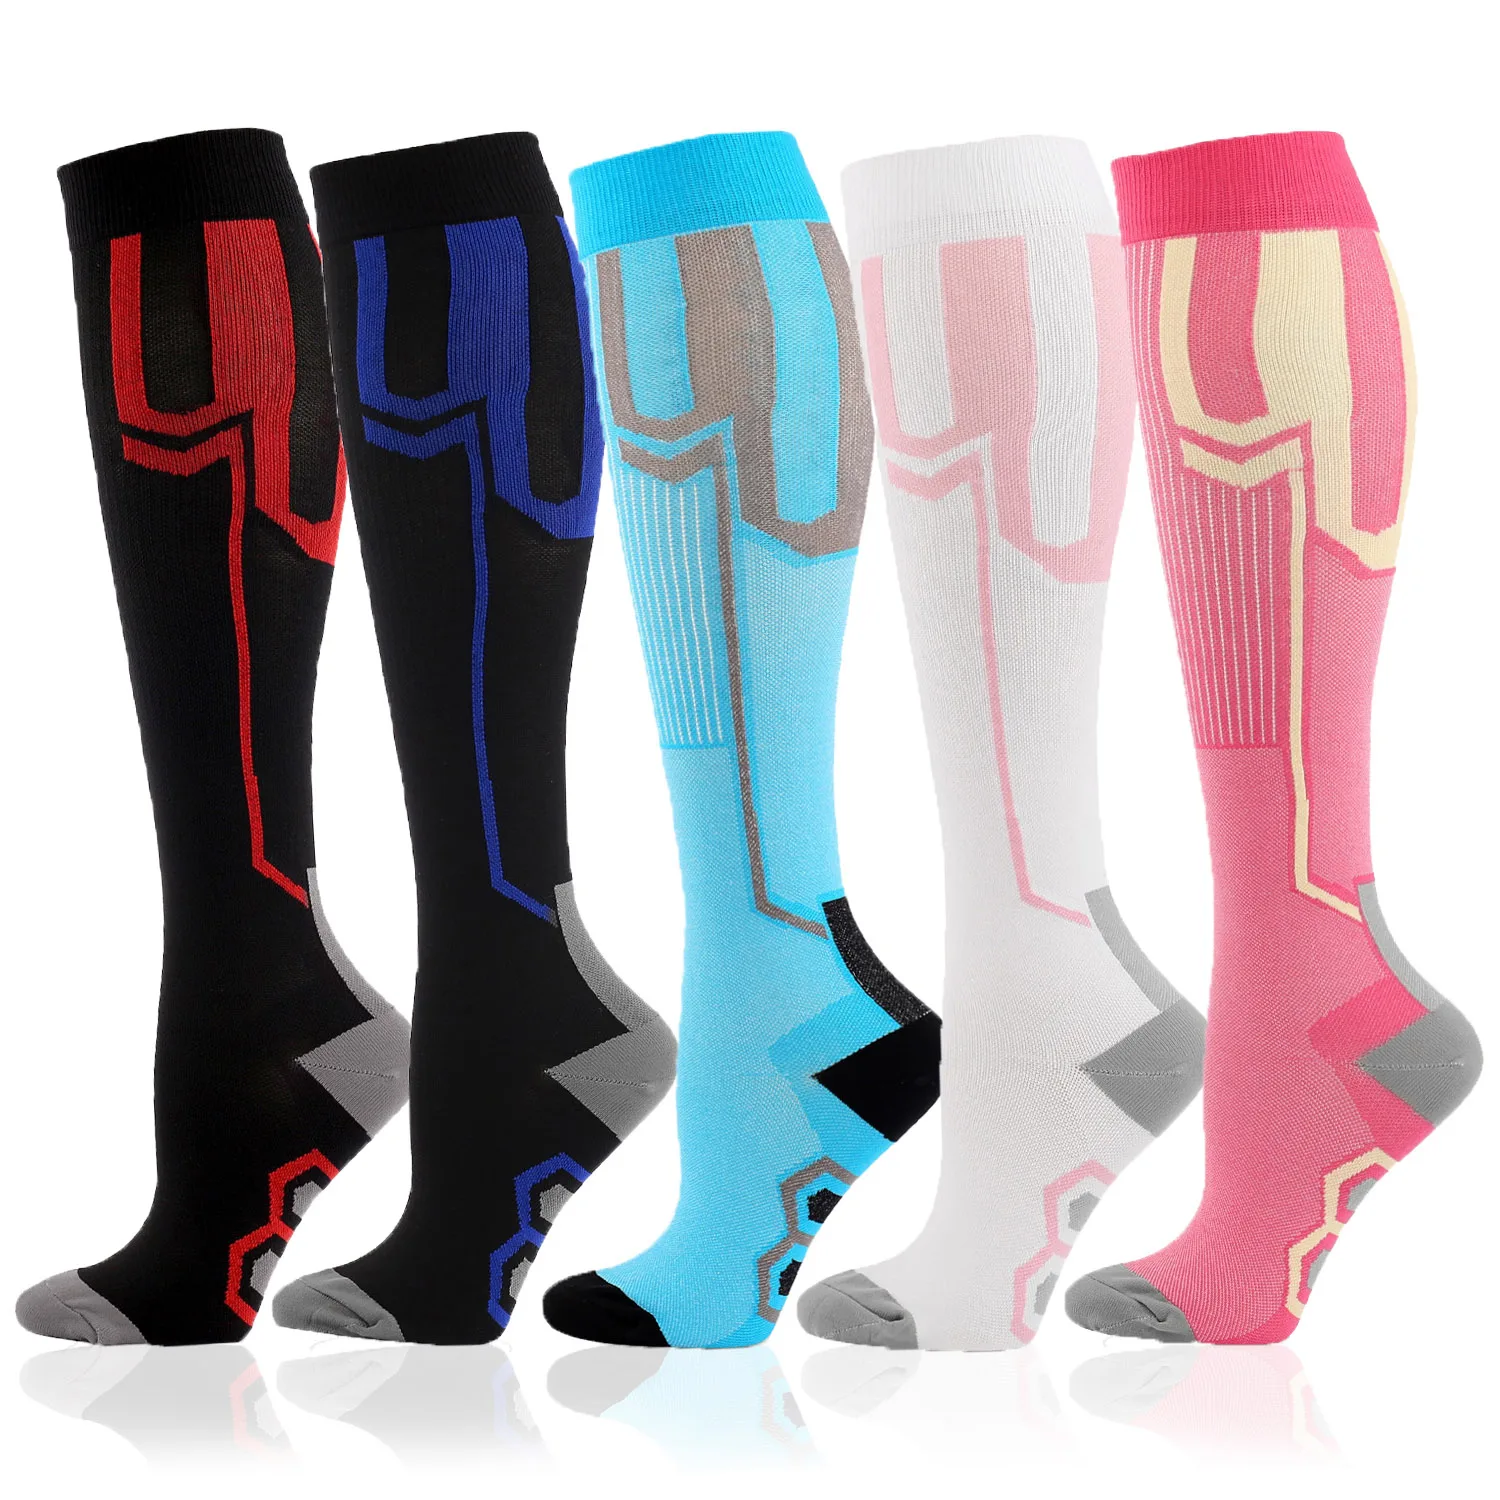 MOJITO, 1 пара новых компрессионных носков для мужчин и женщин, поддерживающие икры, компрессионные чулки до колена для кормления, езда на велосипеде, бег, атлетика